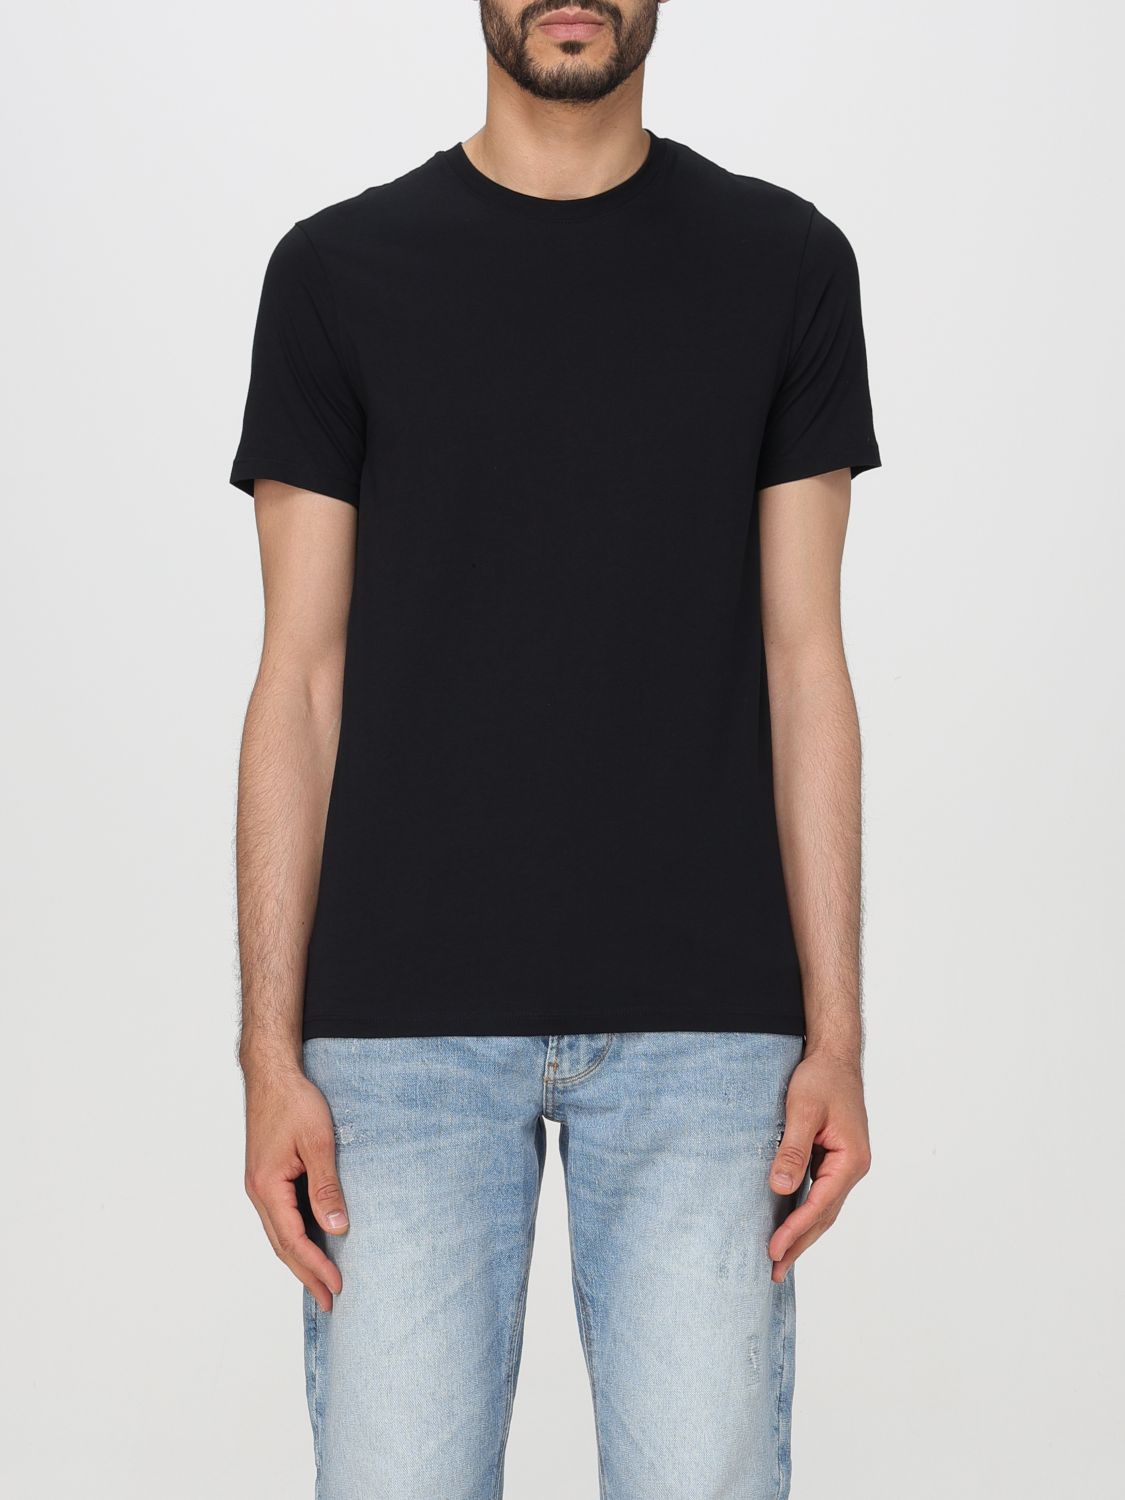 Armani Exchange T-shirt  Men Color Black